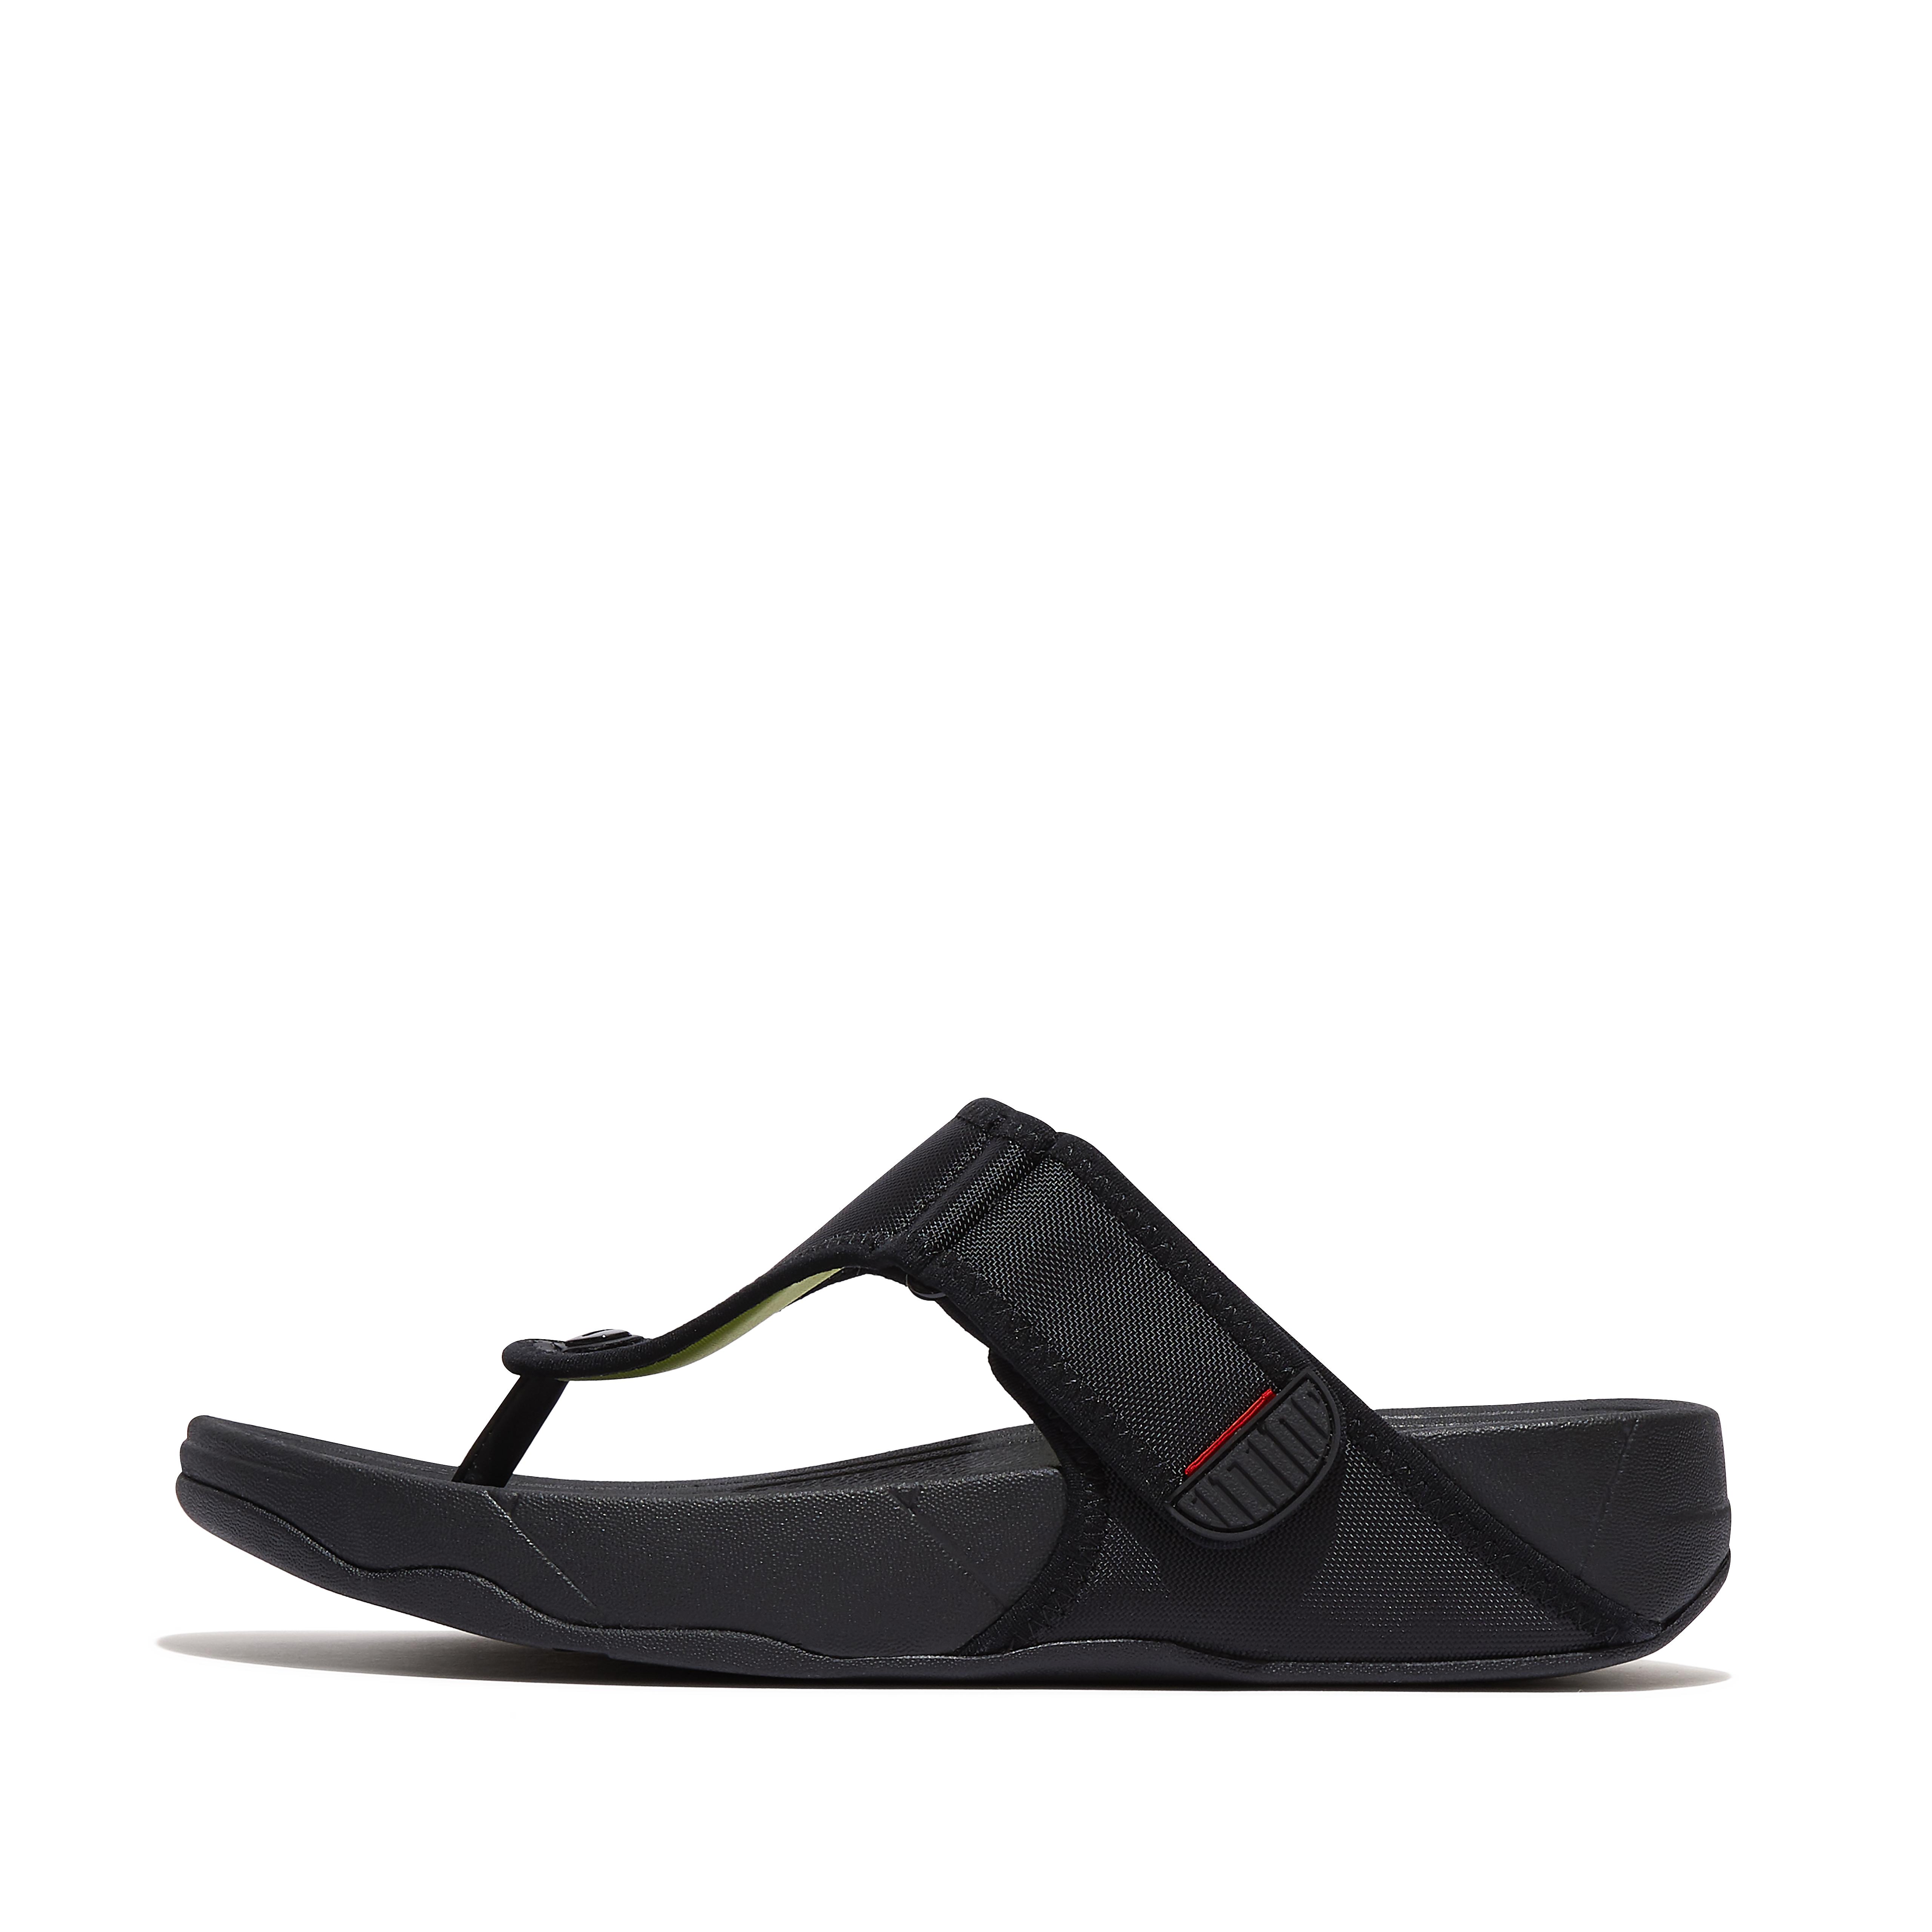 핏플랍 Fitflop Adjustable Water-Resistant Toe-Post Sandals,Black